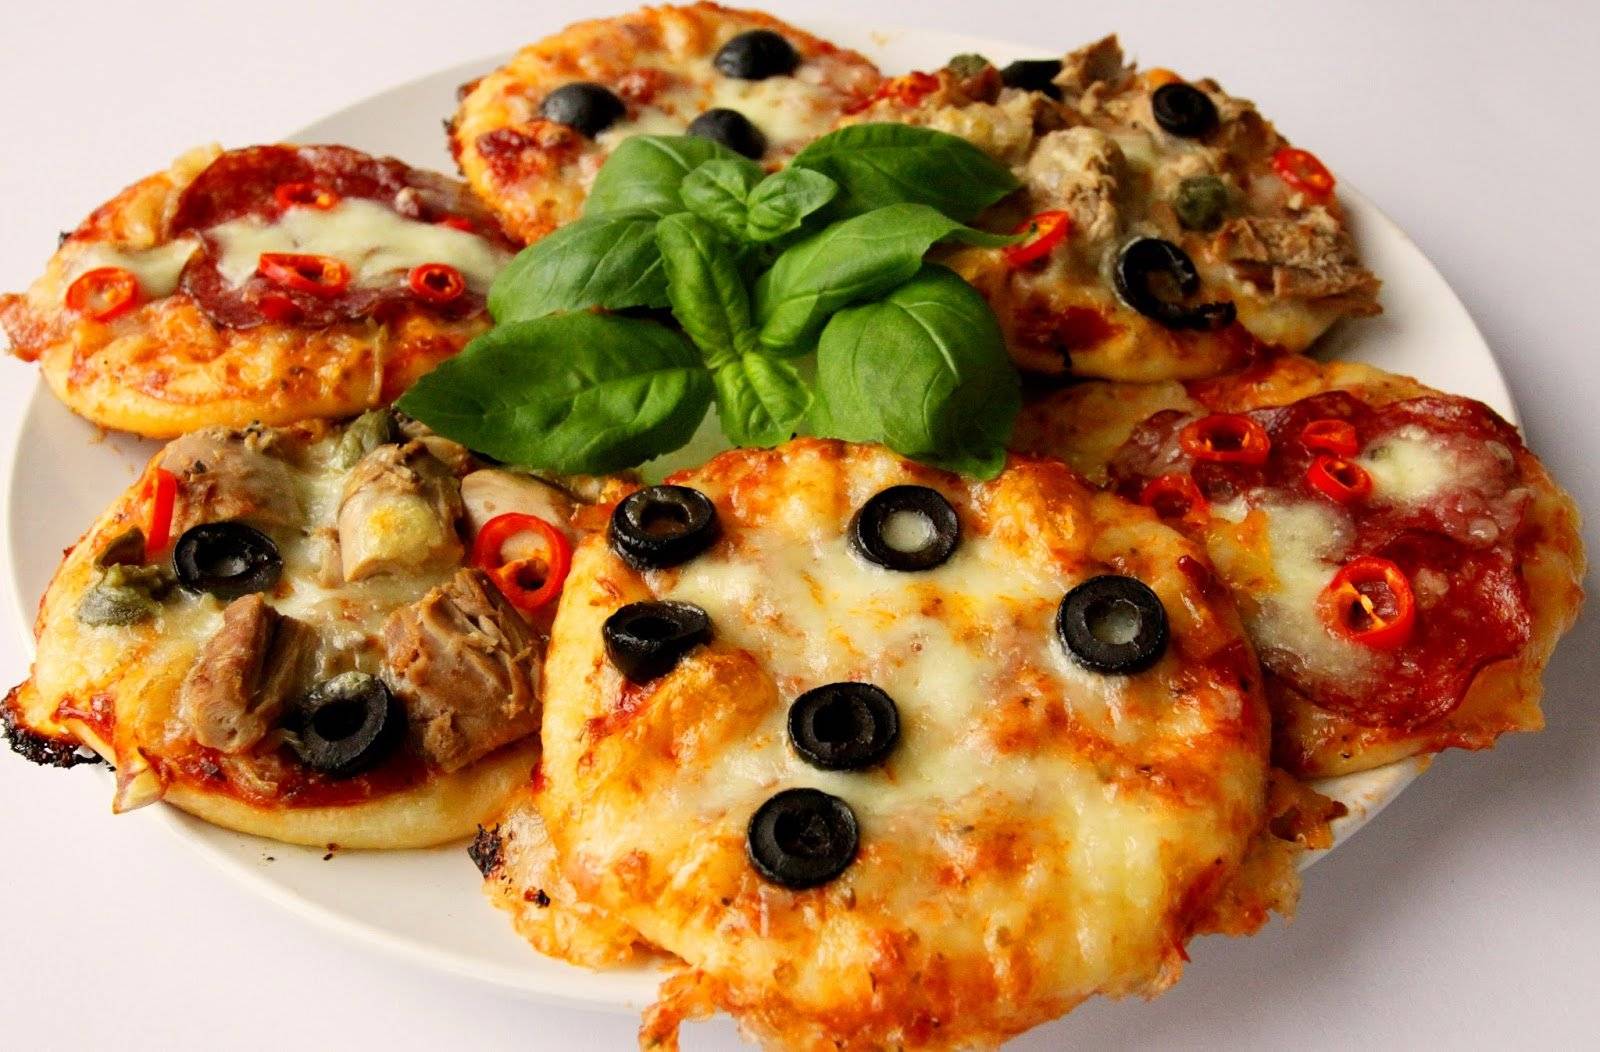 10 рецептов пиццы для правильного питания / полезный и вкусный фастфуд – статья из рубрики "здоровая еда" на food.ru